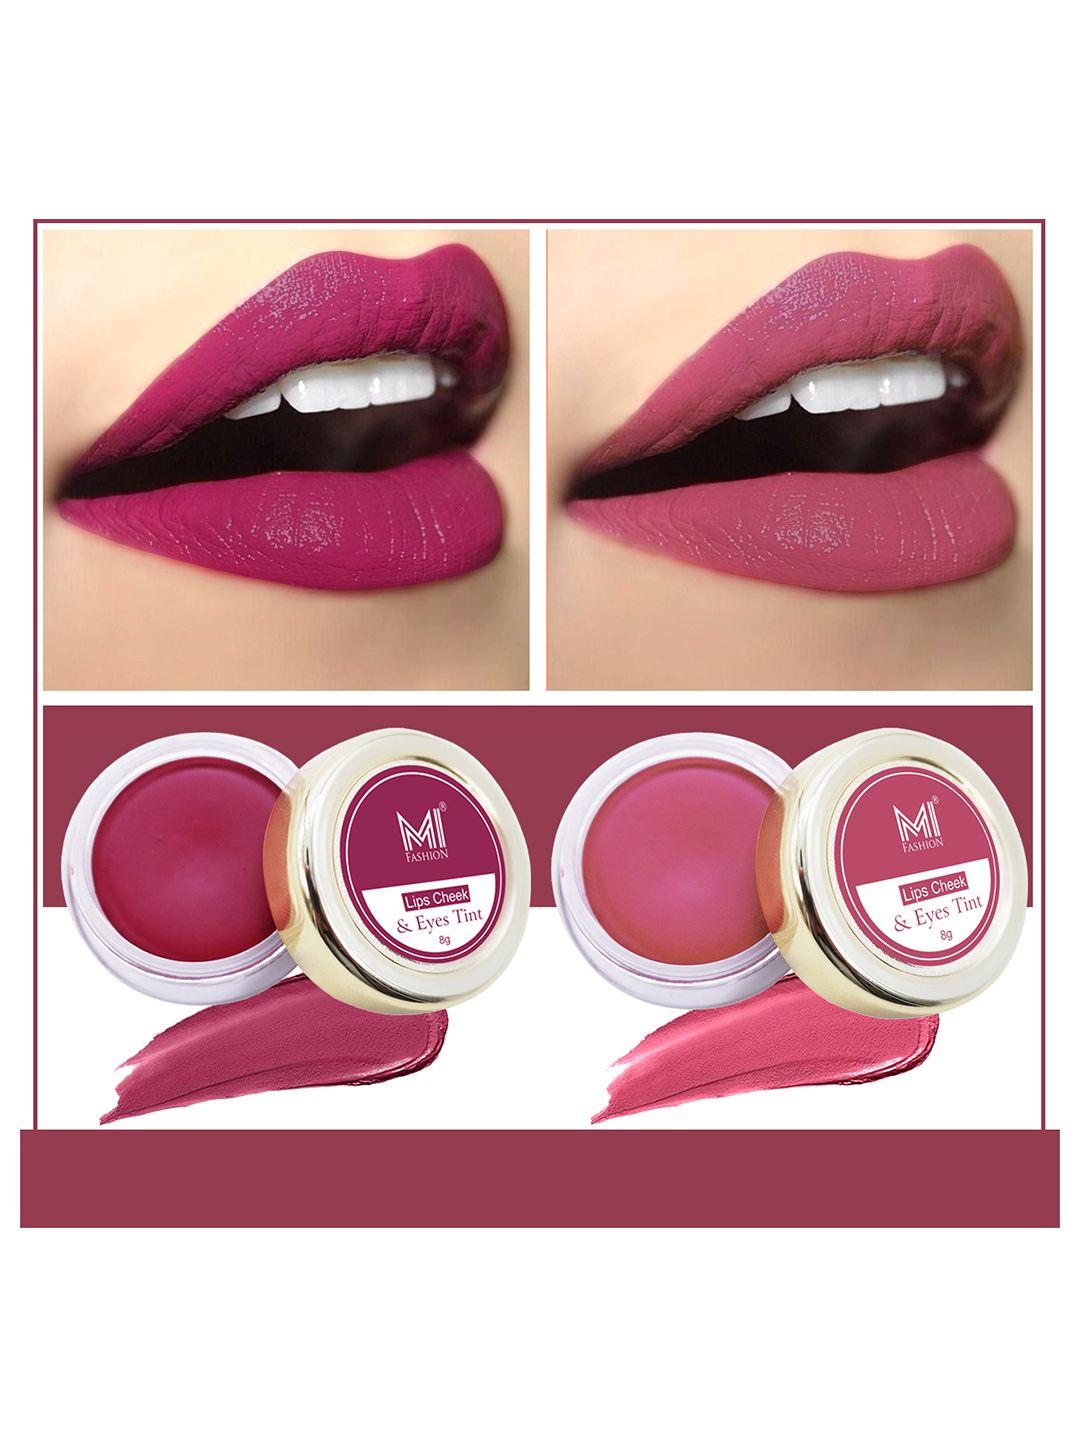 mi fashion set of 2 natural lips cheek & eyes tint 8g each- deep carmine pink red & peach